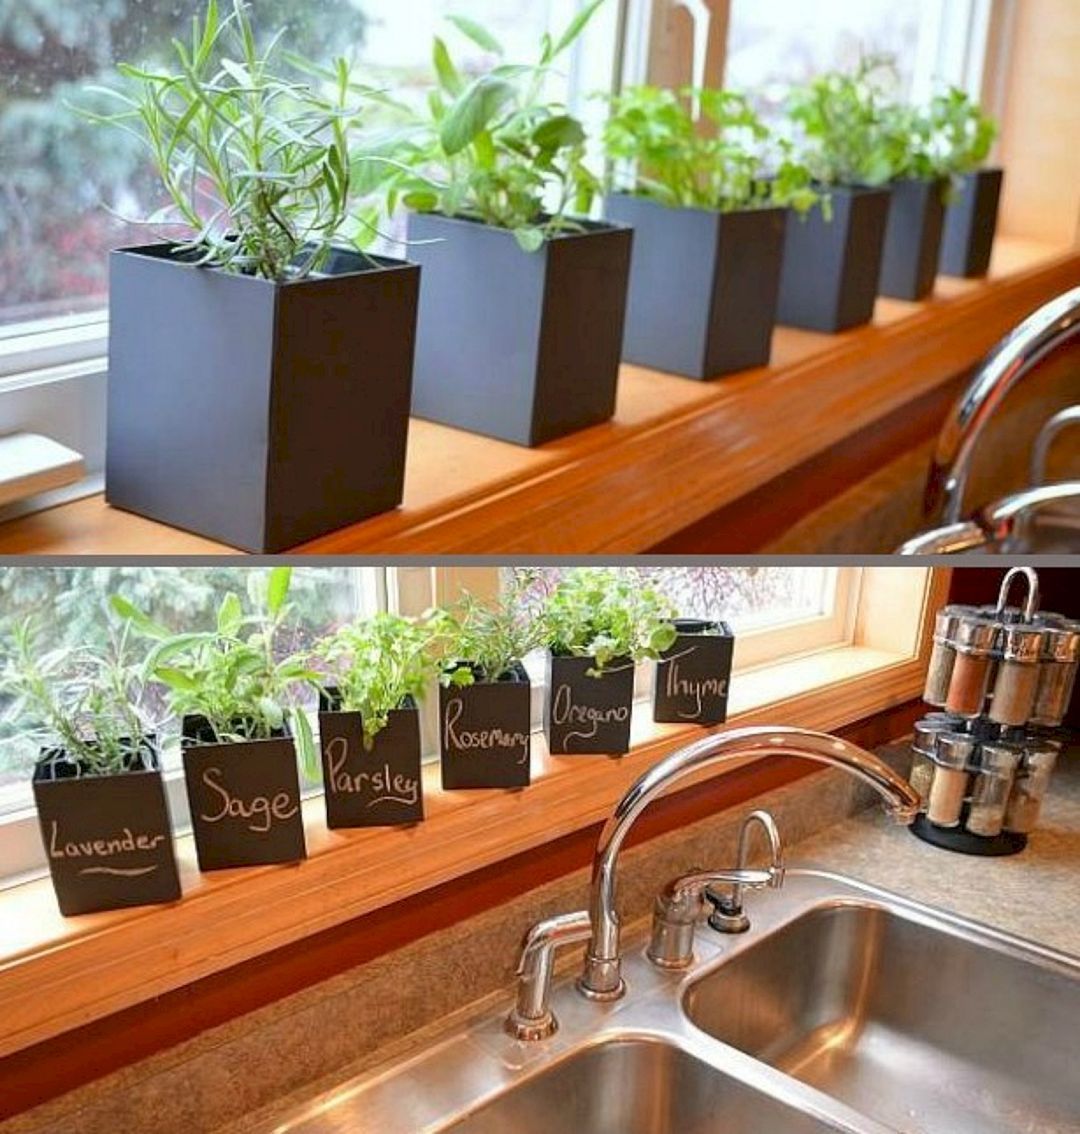 The Best Indoor Herb Garden Ideas